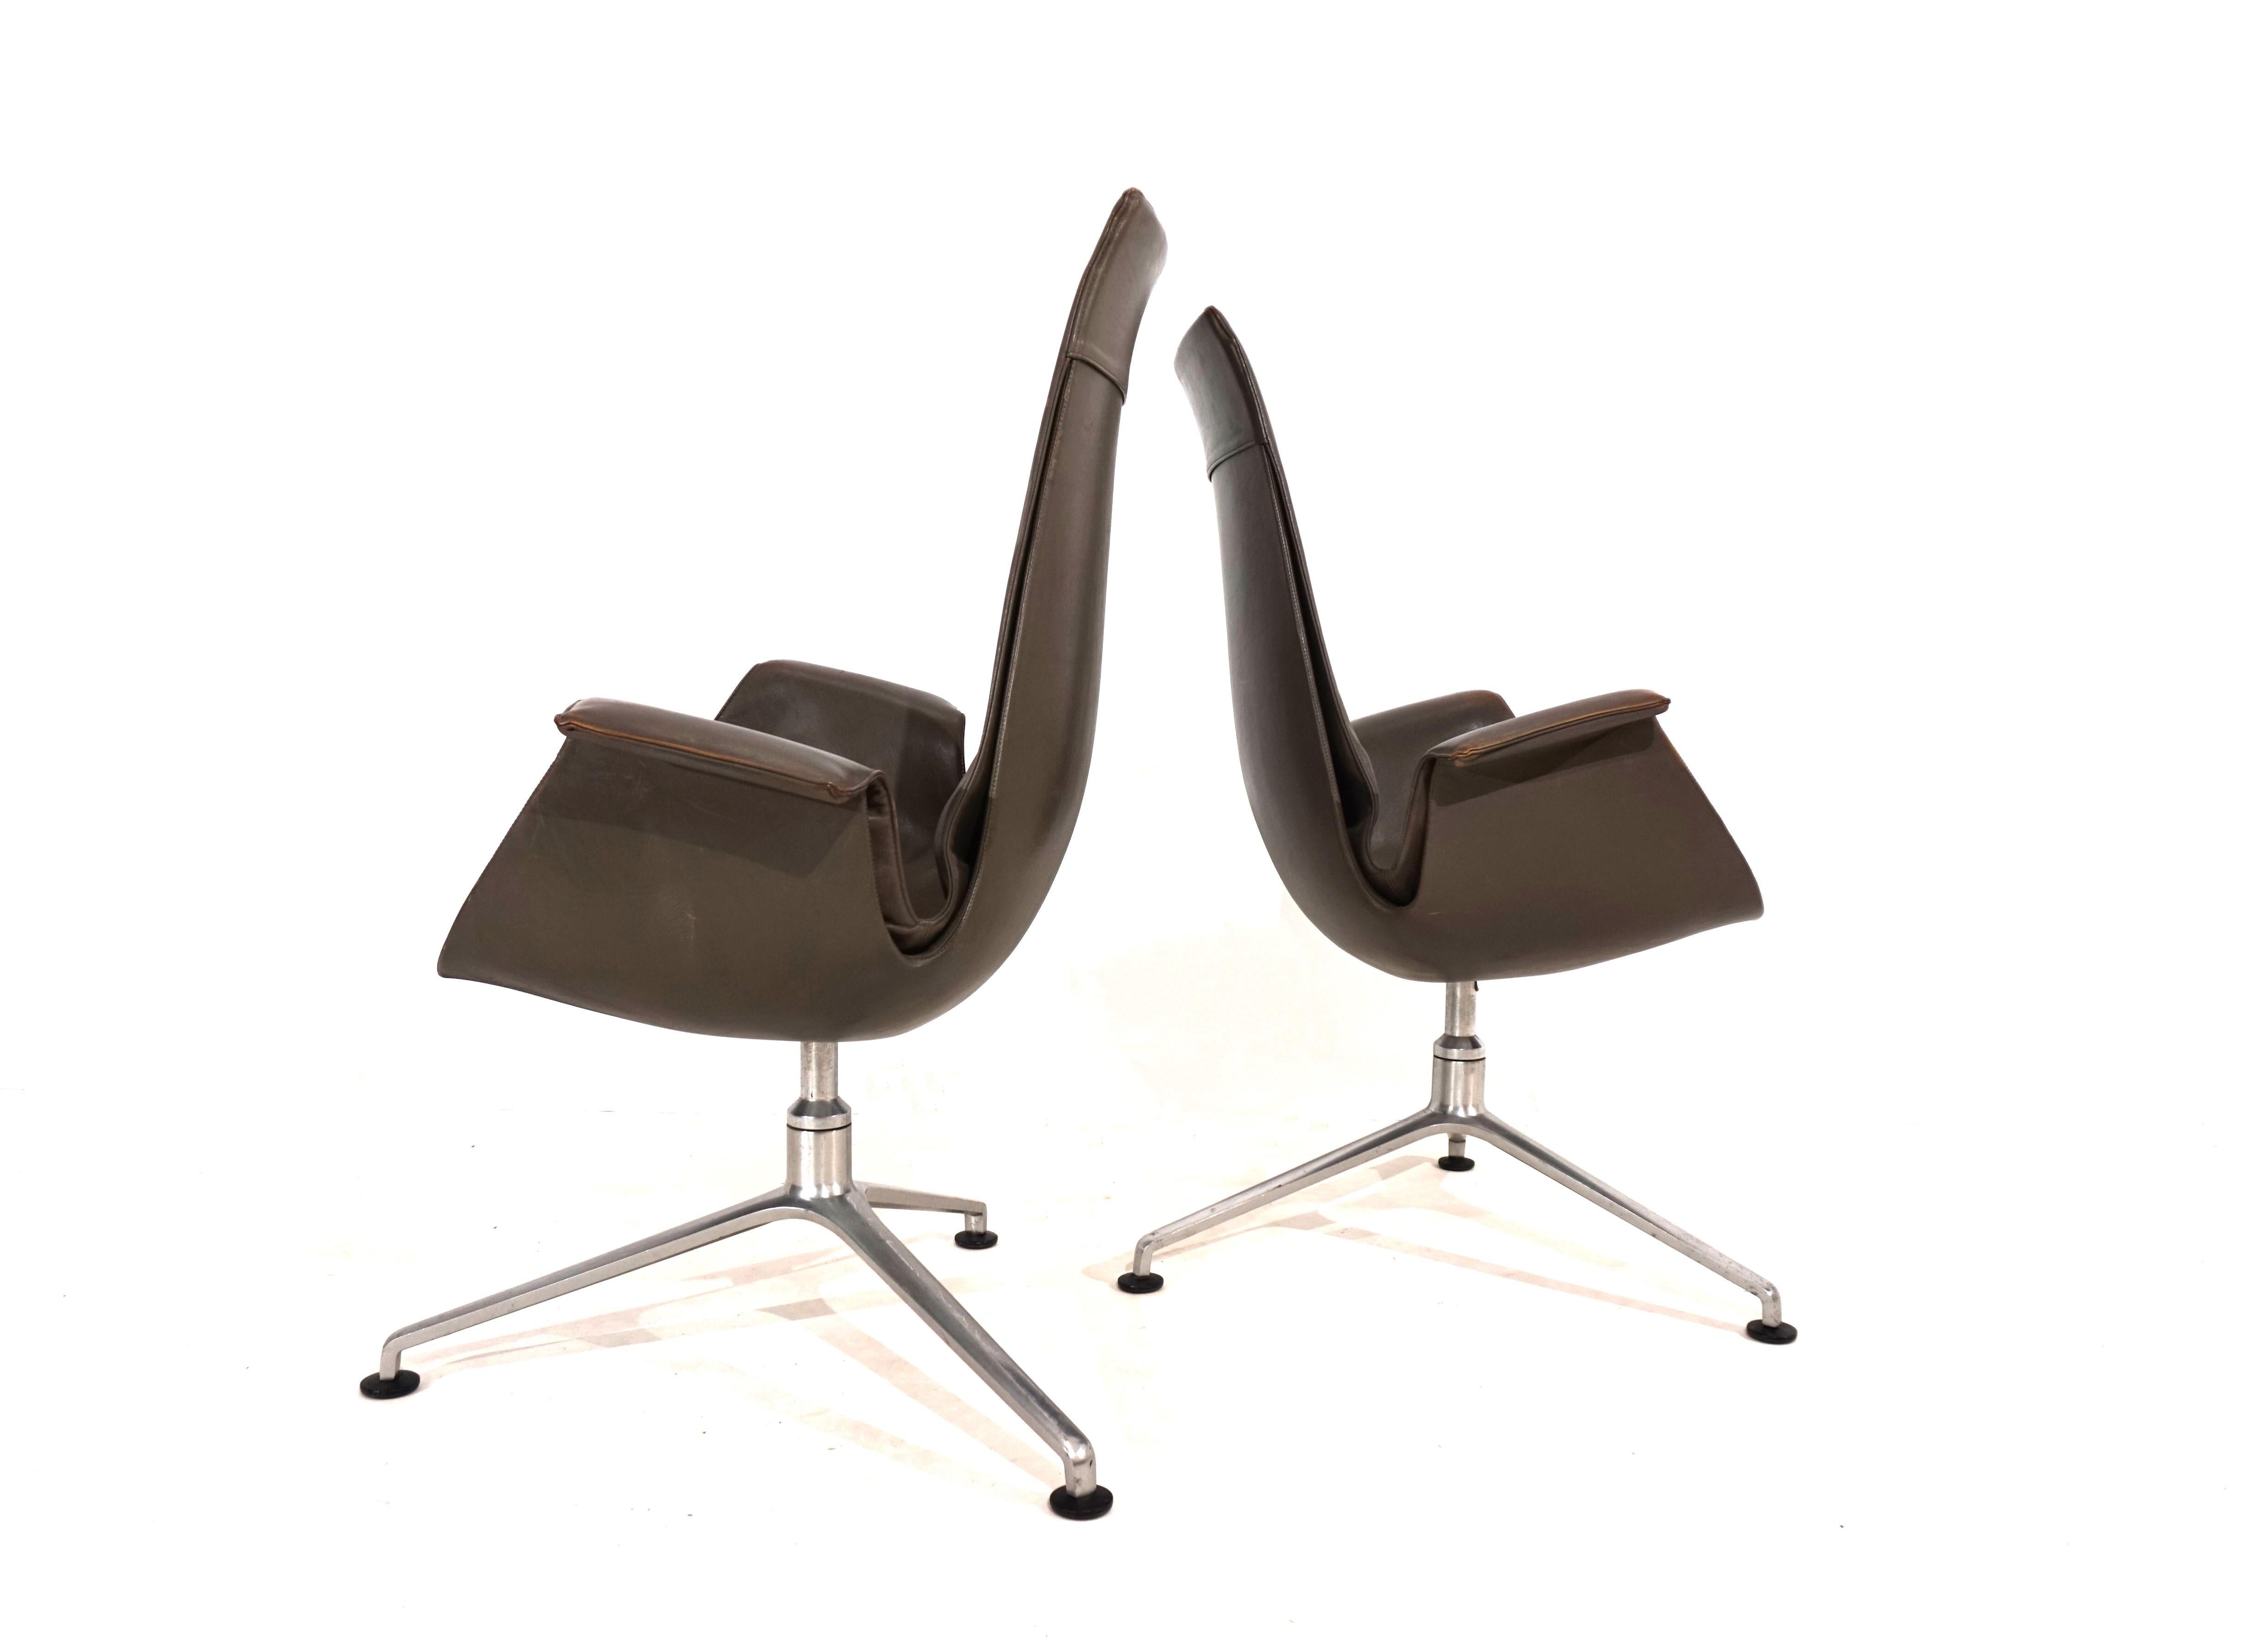 Cette paire d'élégantes chaises à haut dossier Eleg 6725 Bird est en très bon état. Le cuir de couleur taupe des fauteuils ne présente pratiquement aucune trace d'usure et les accoudoirs présentent une charmante patine. Les cadres typiques des